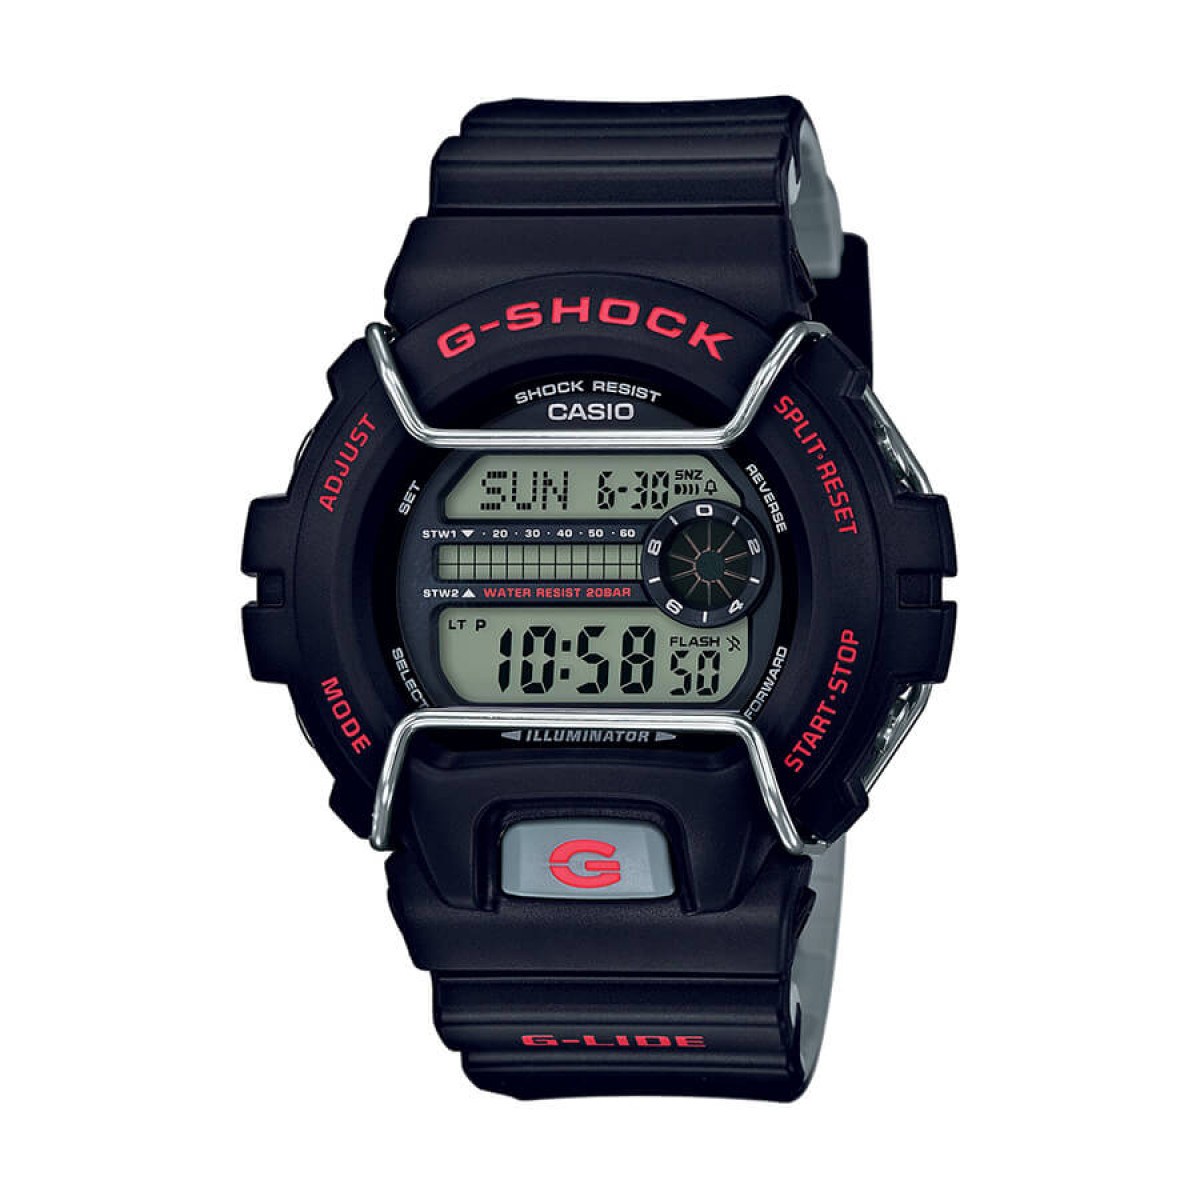 Часовник Casio G-Shock GLS-6900-1ER